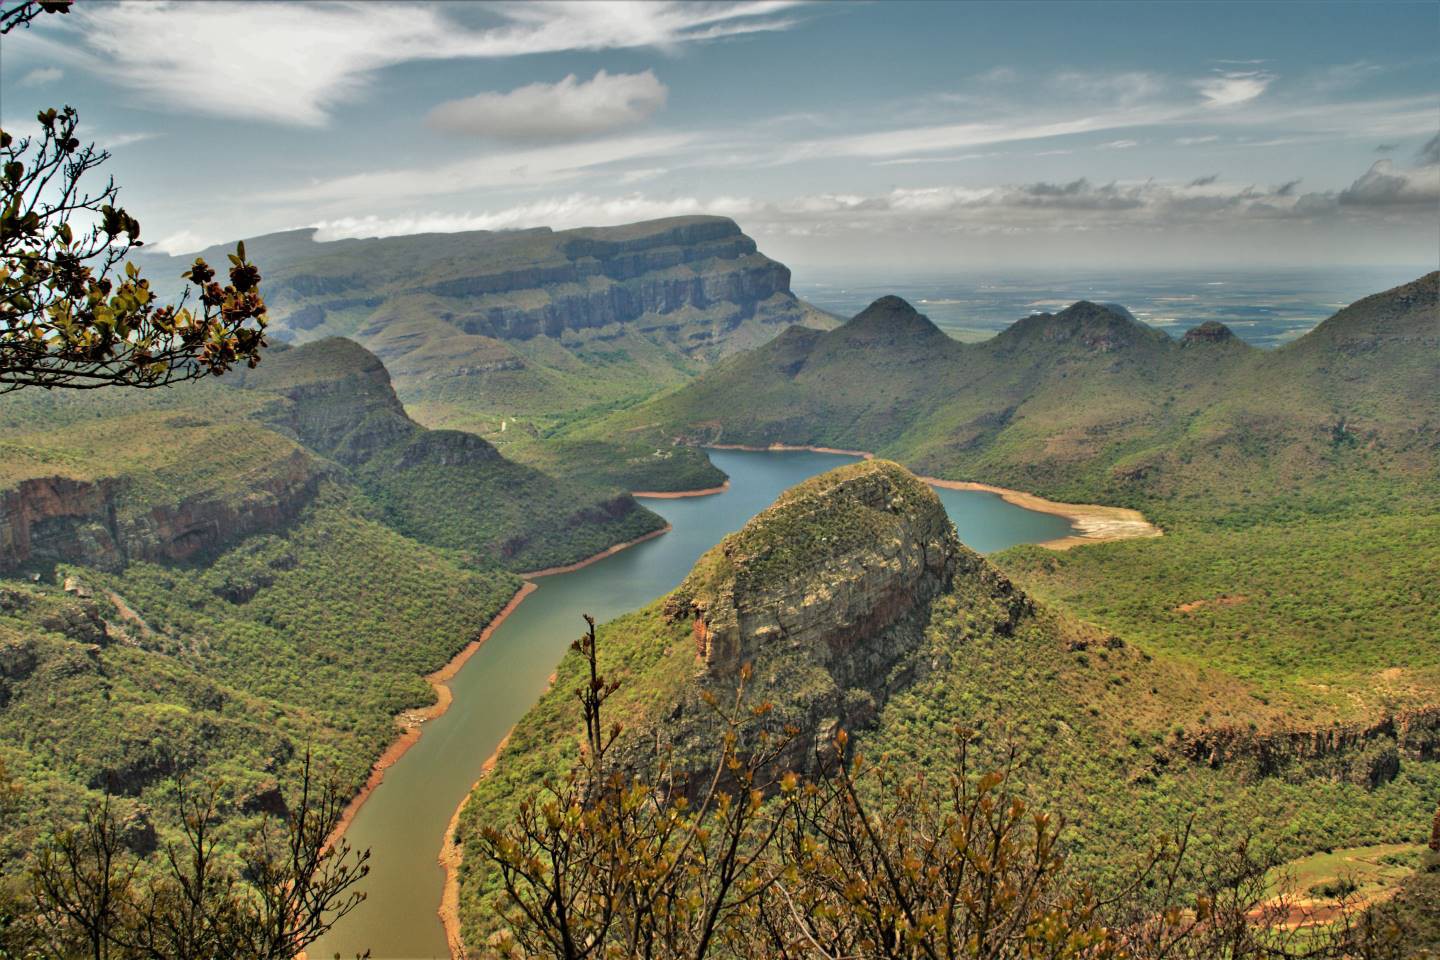 Afbeelding van Blyde River Drie Rondavels Panoramaroute Suid Afrika Reise